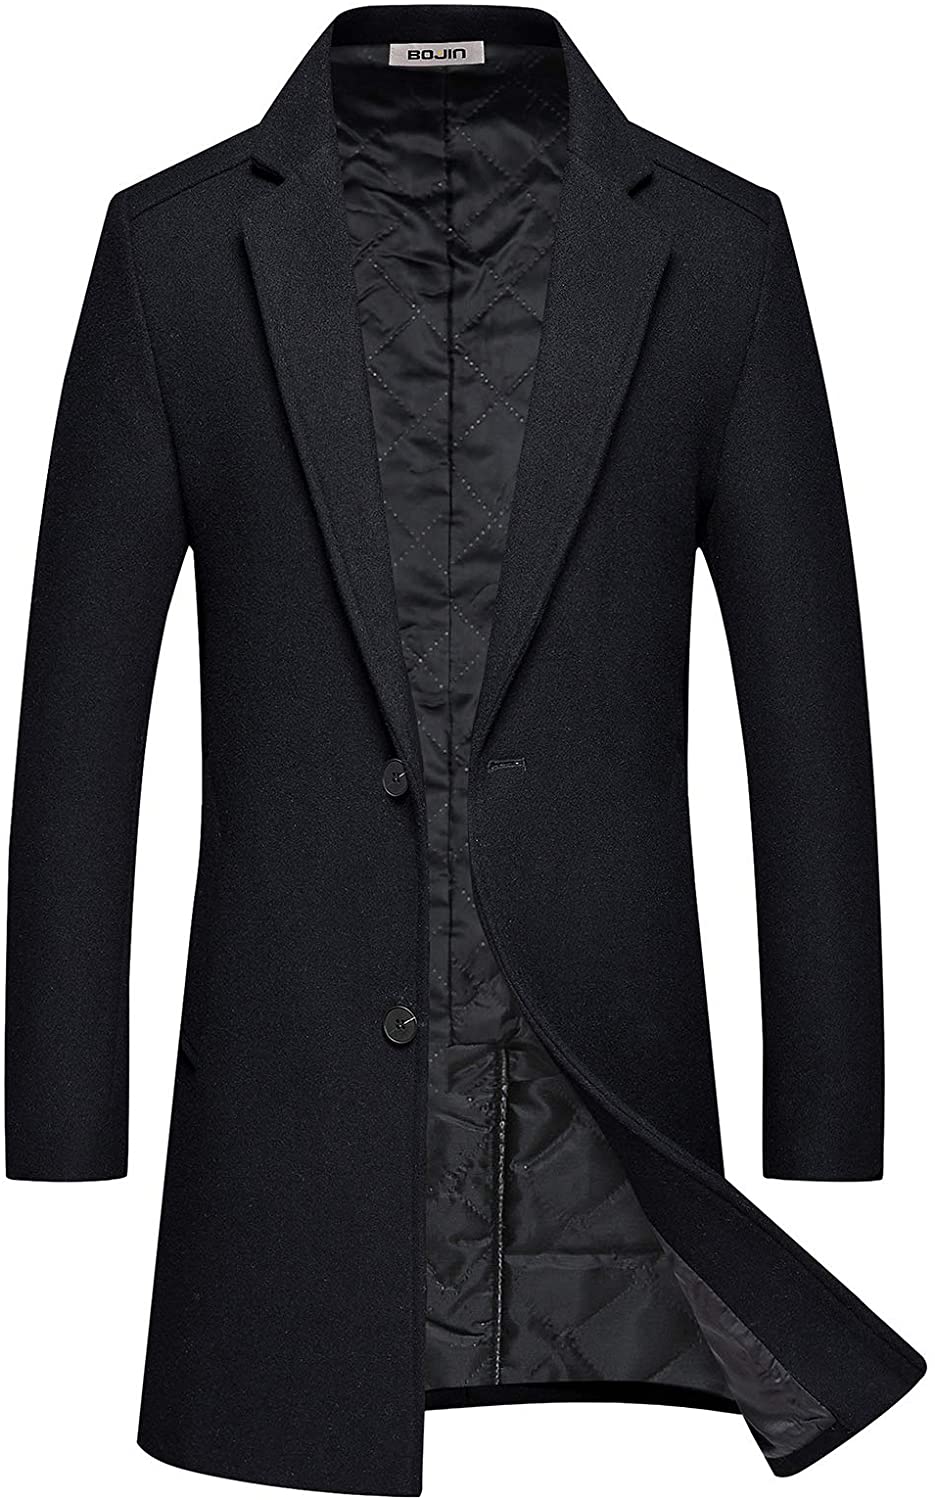 Dainzuy Mens Long Wool Woolen Pea Coat Single Breasted Overcoat Winter Trench Coat Warm Long Jacket with Belts 